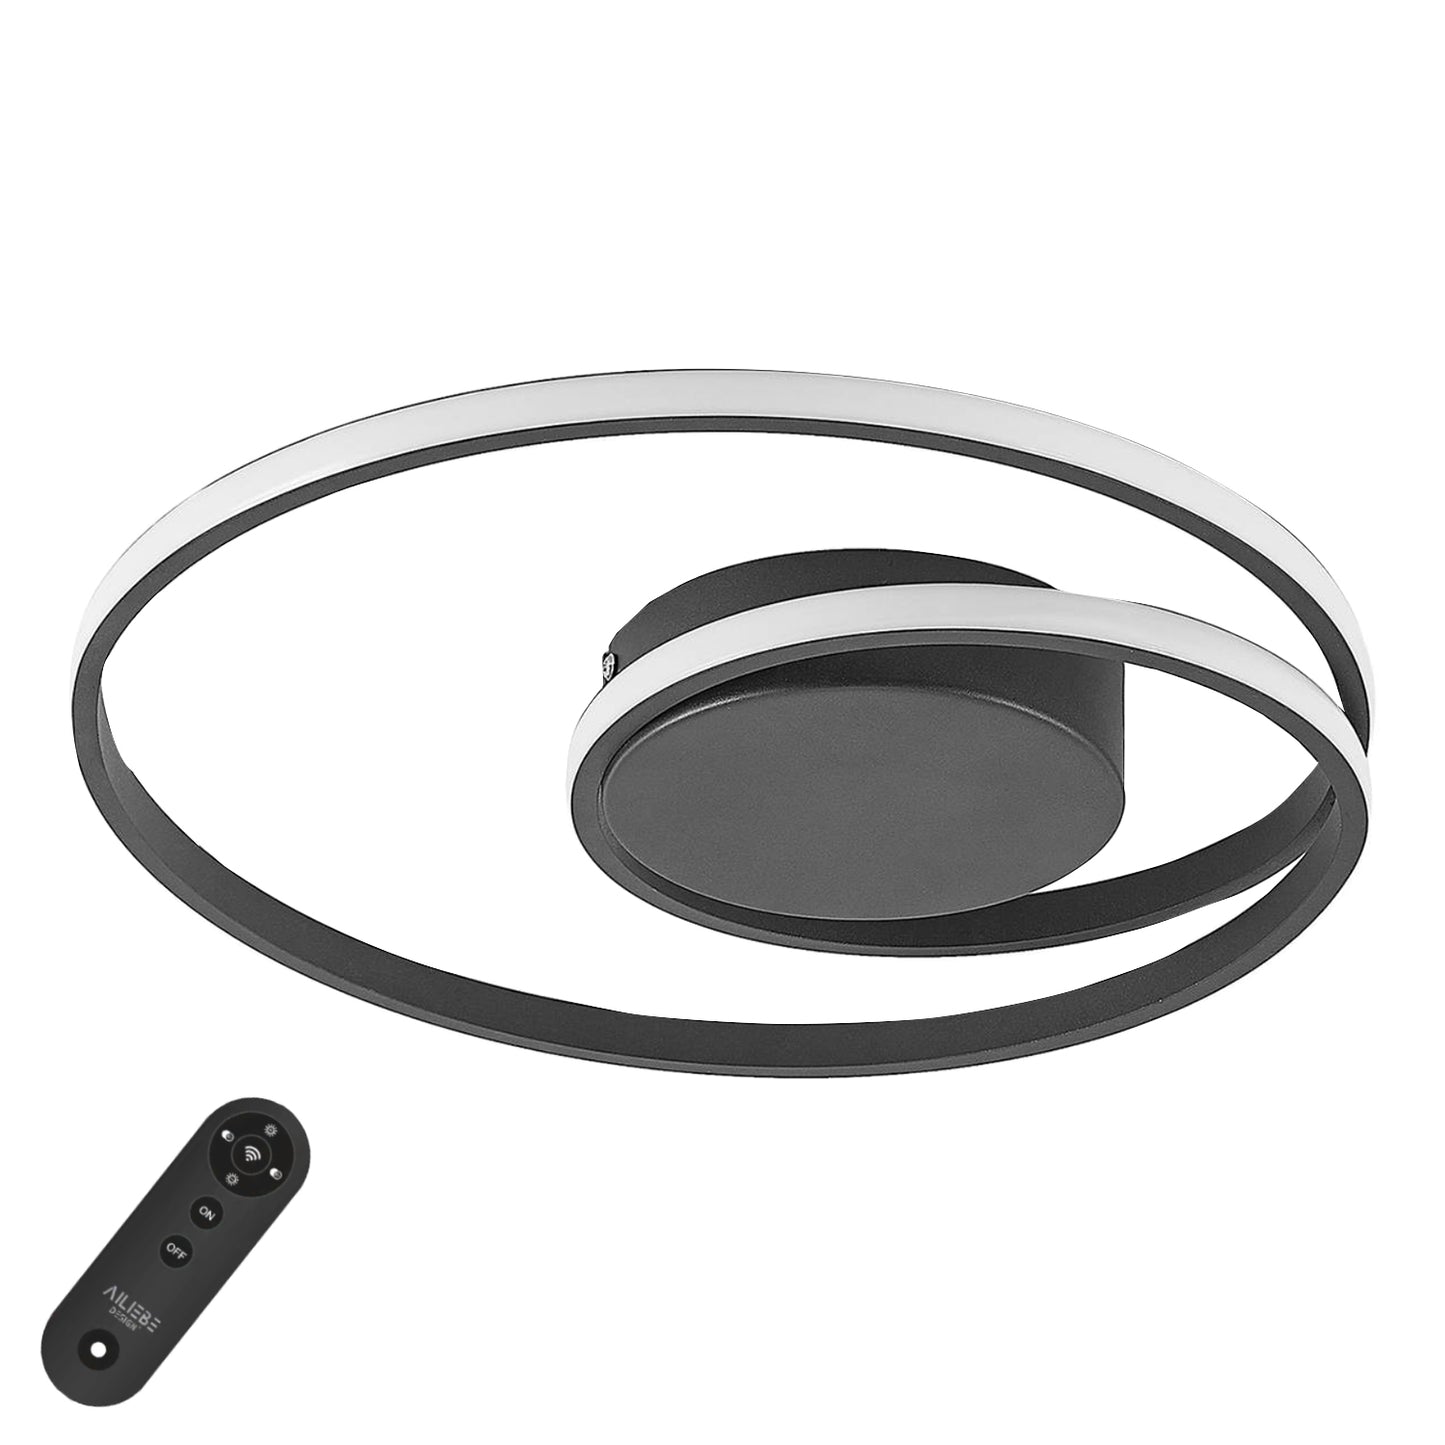 Ailiebe Design® LED-Deckenleuchte Dimmbar mit Fernbedienung mit Memory Funktion Modern Kreativ Durchmesser 46cm Kreis Spirale Schwarz AILIEBE005